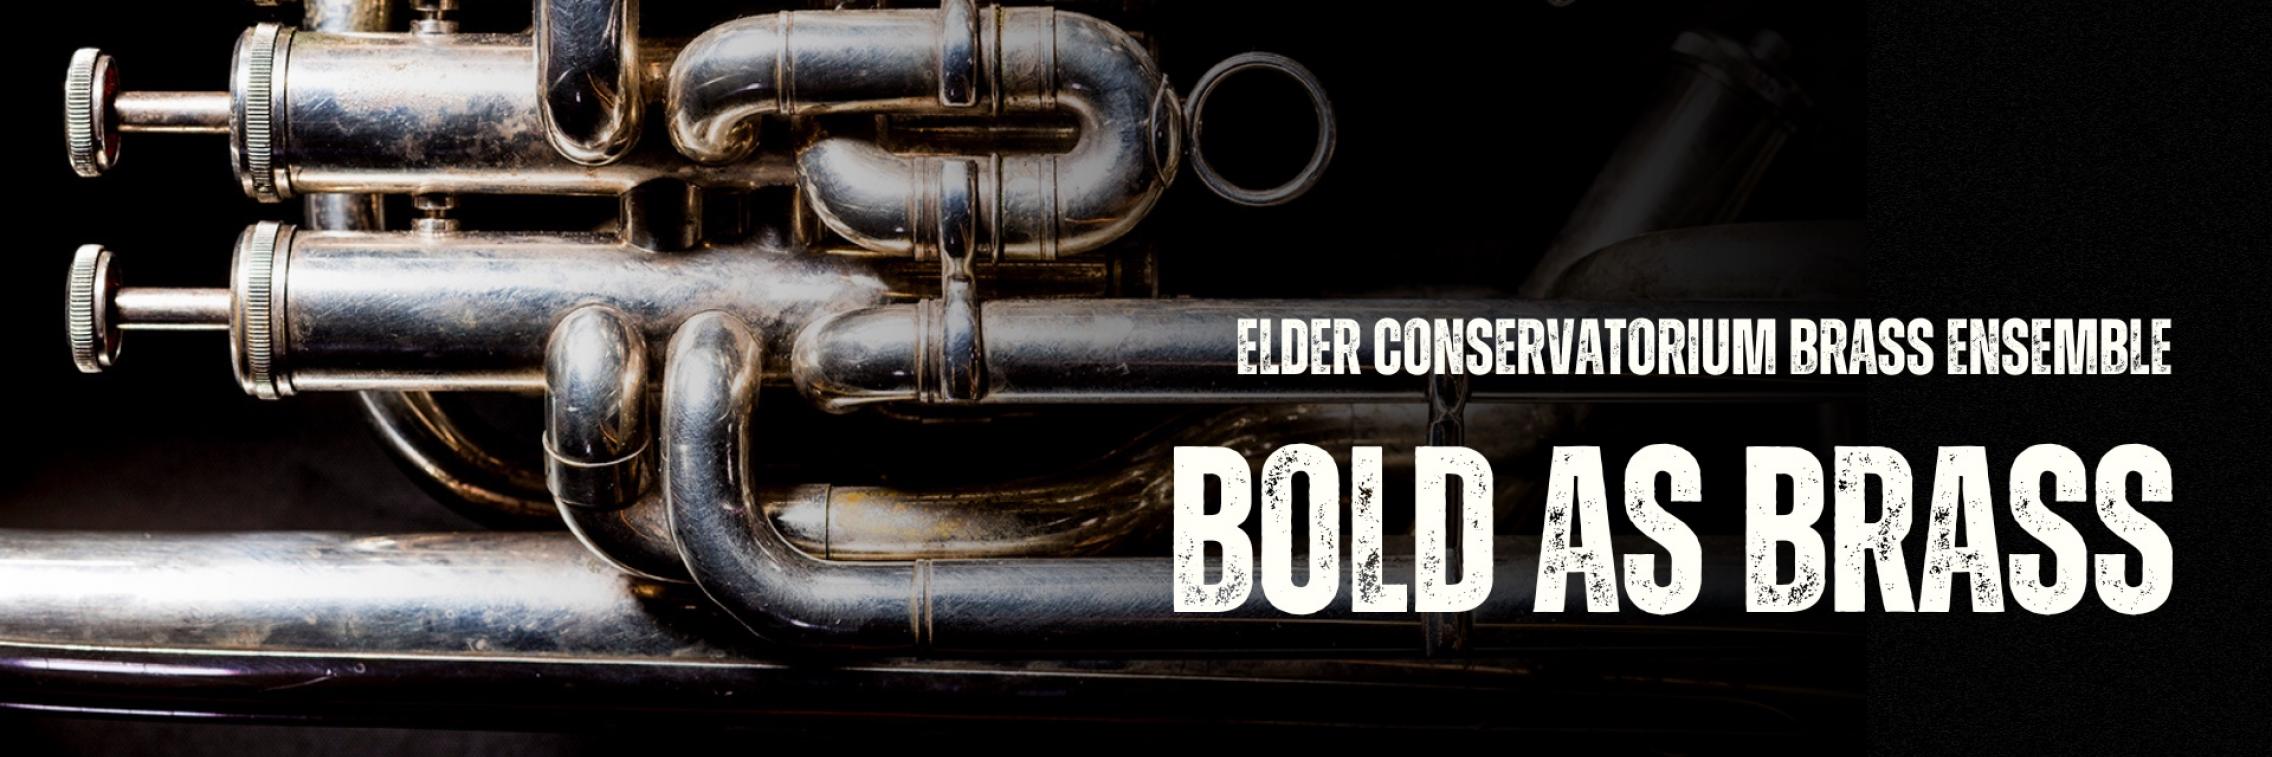 Bold as Brass